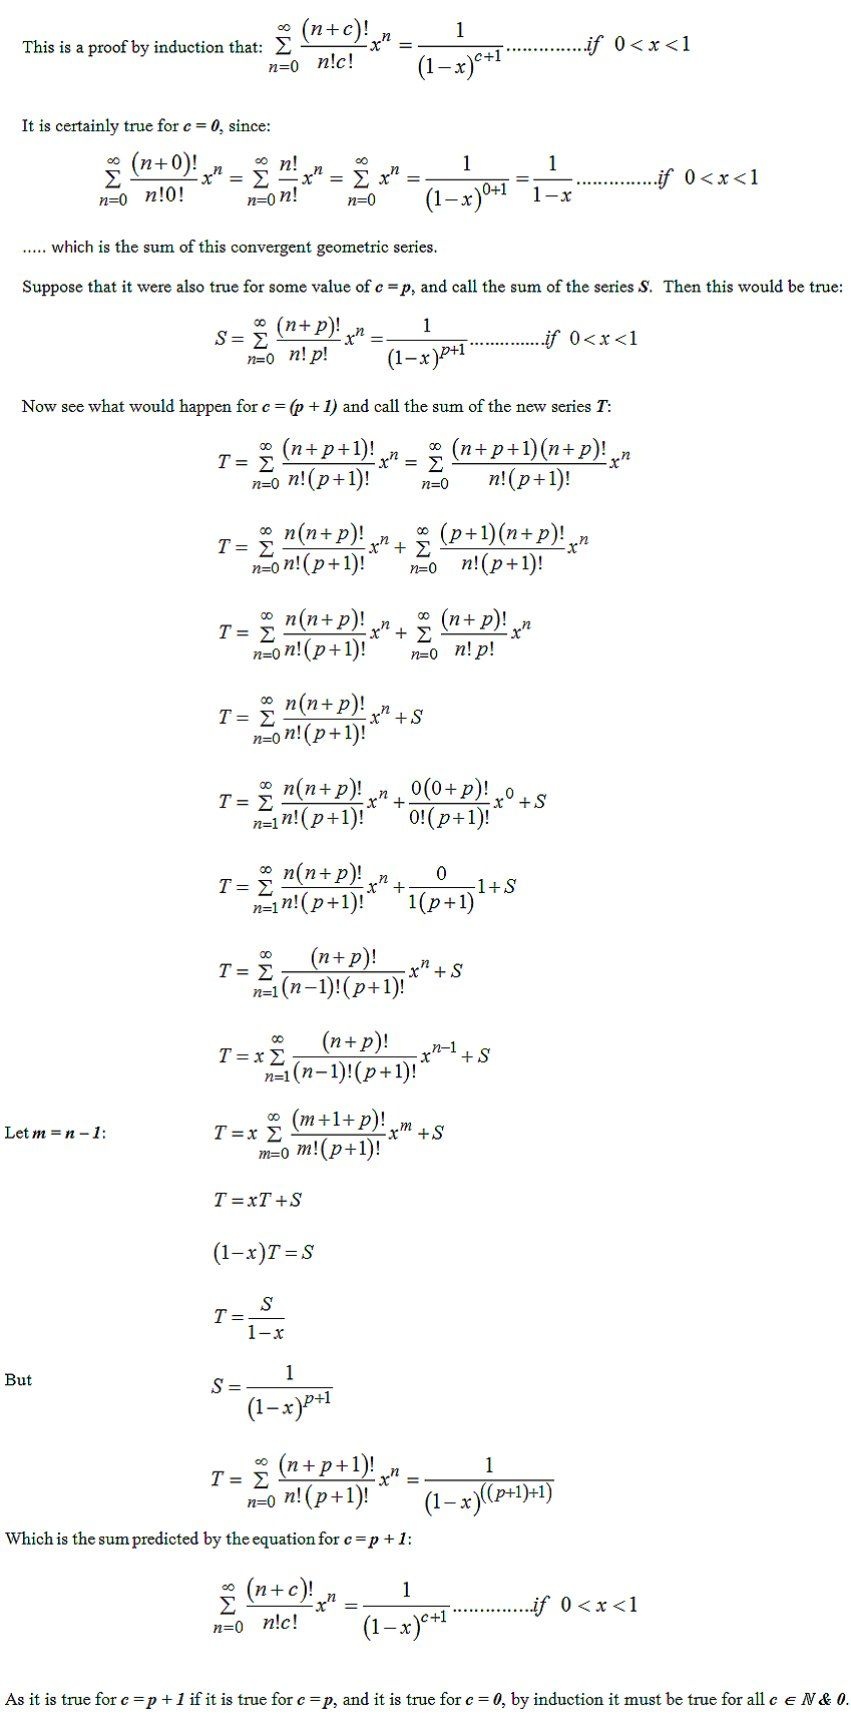 JNJ equation 11